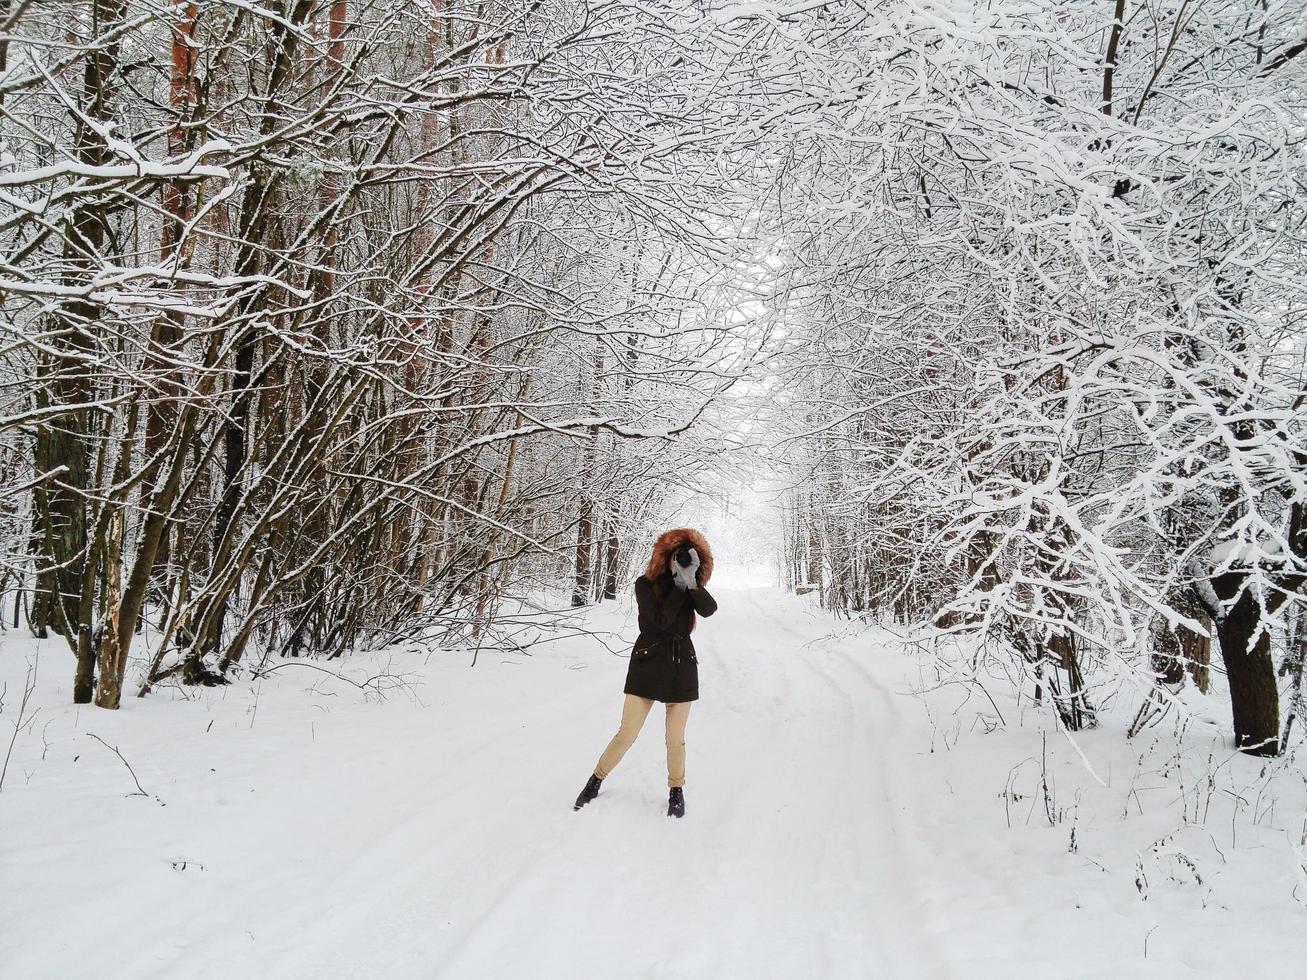 Letland, 2020 - Vrouw in zwarte parka die een foto maakt in een besneeuwd landschap